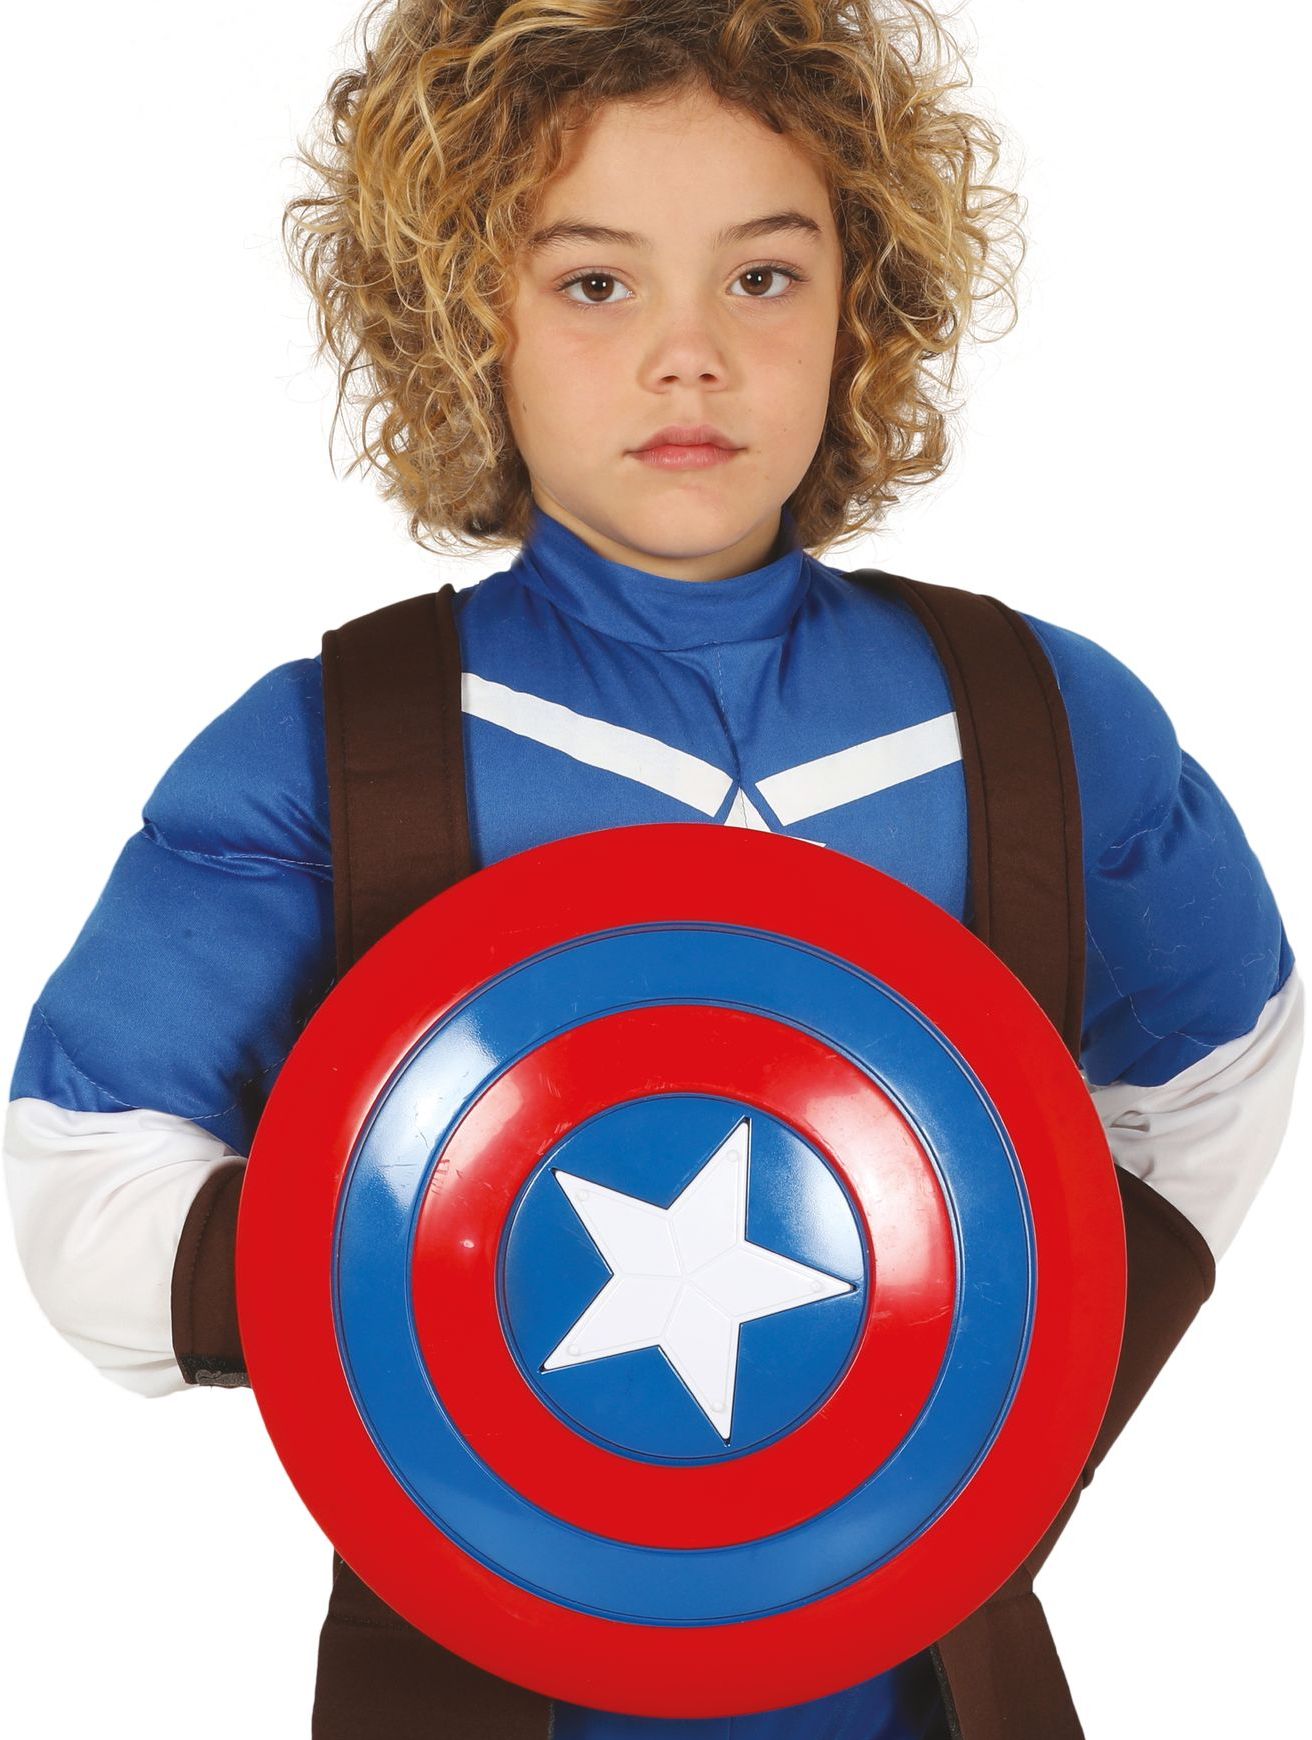 Captain America schild voor kinderen